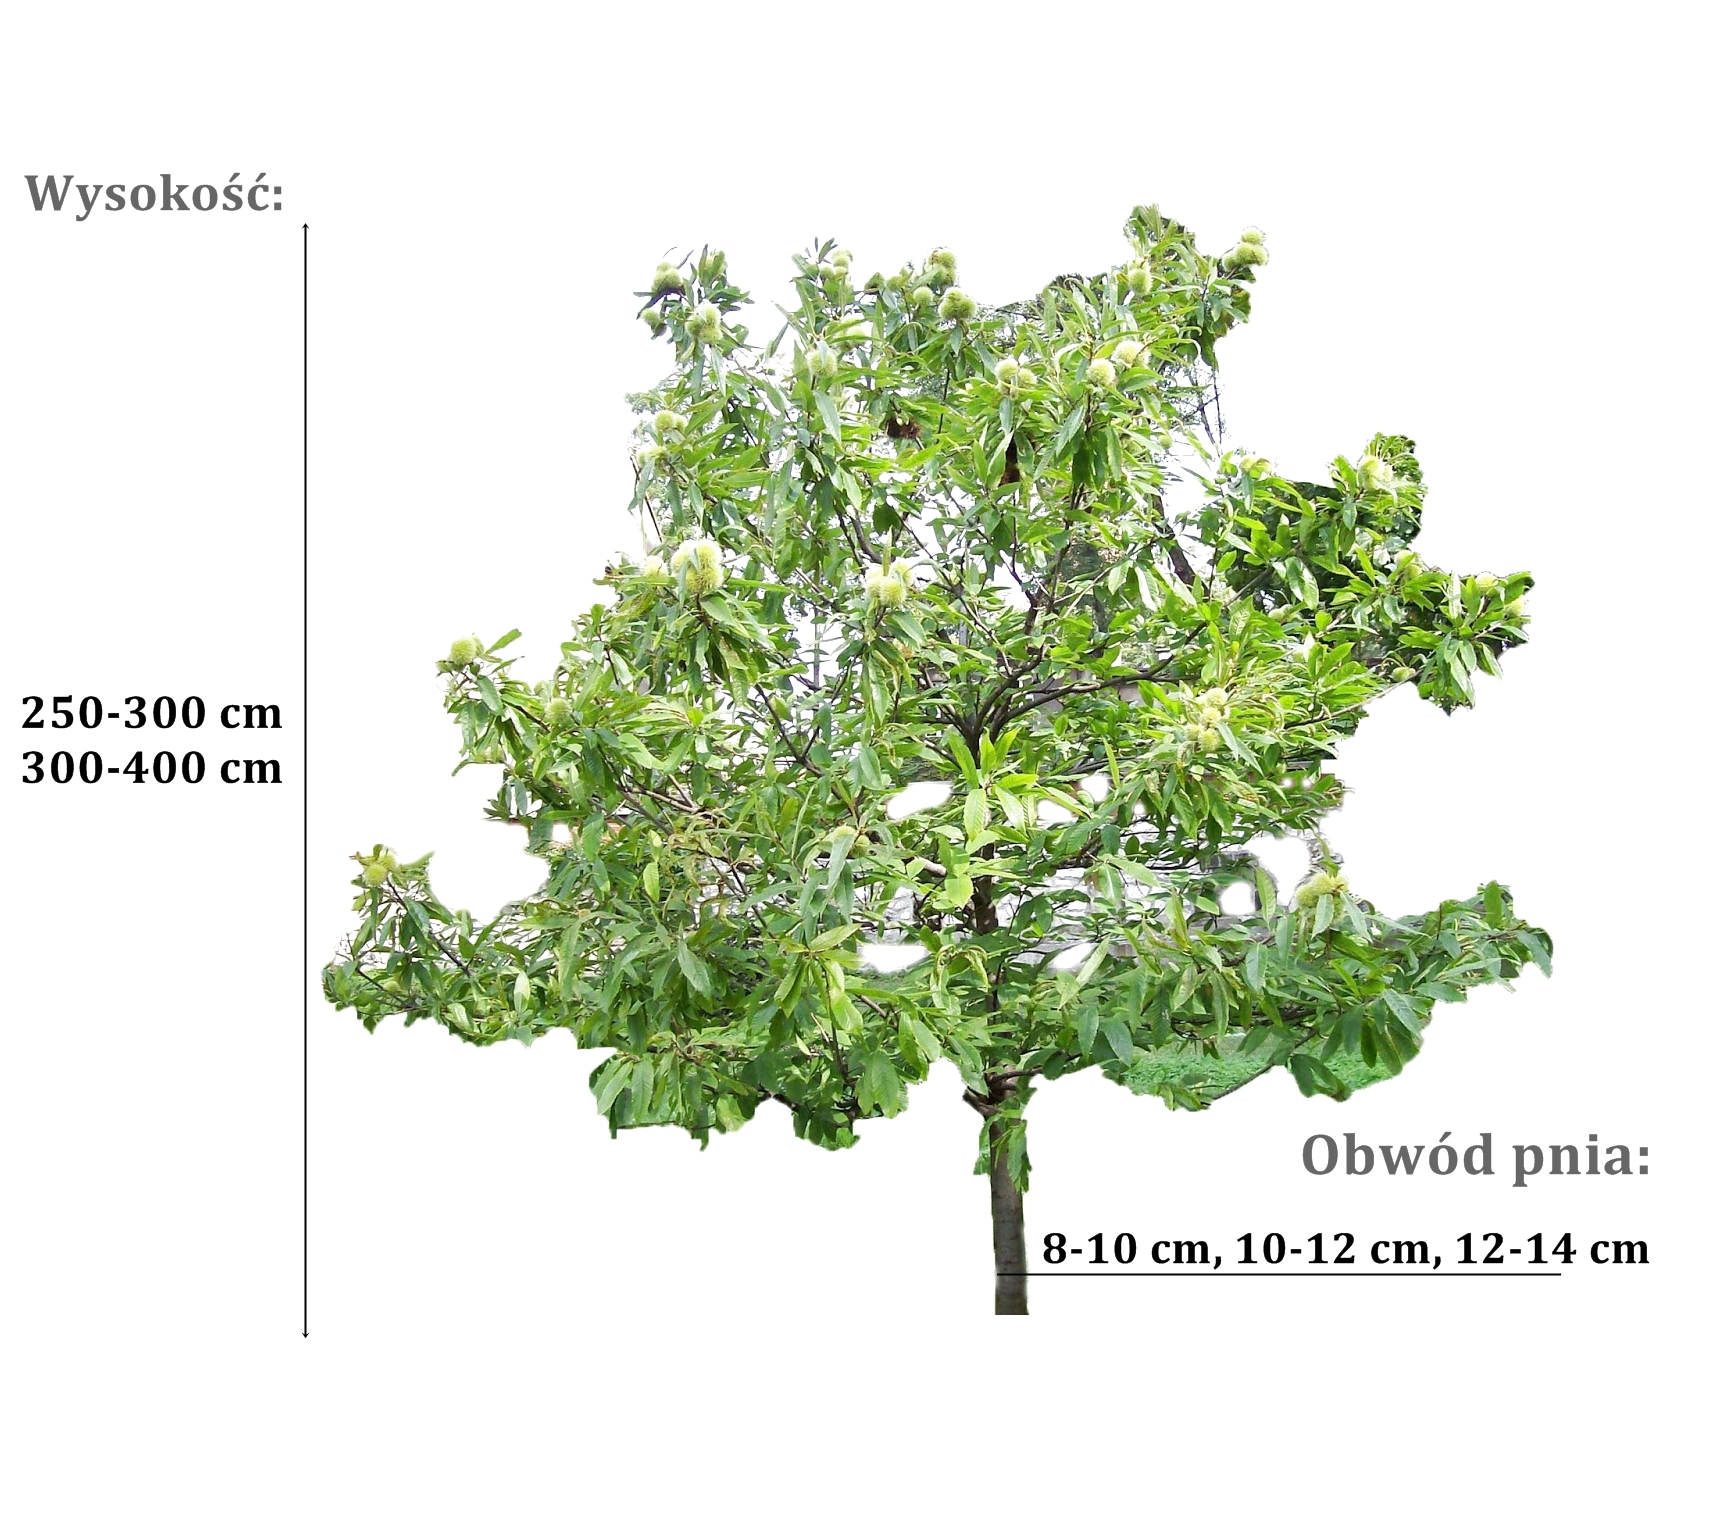 kasztan jadalny - duze sadzonki drzewa o roznych obwodach pnia 